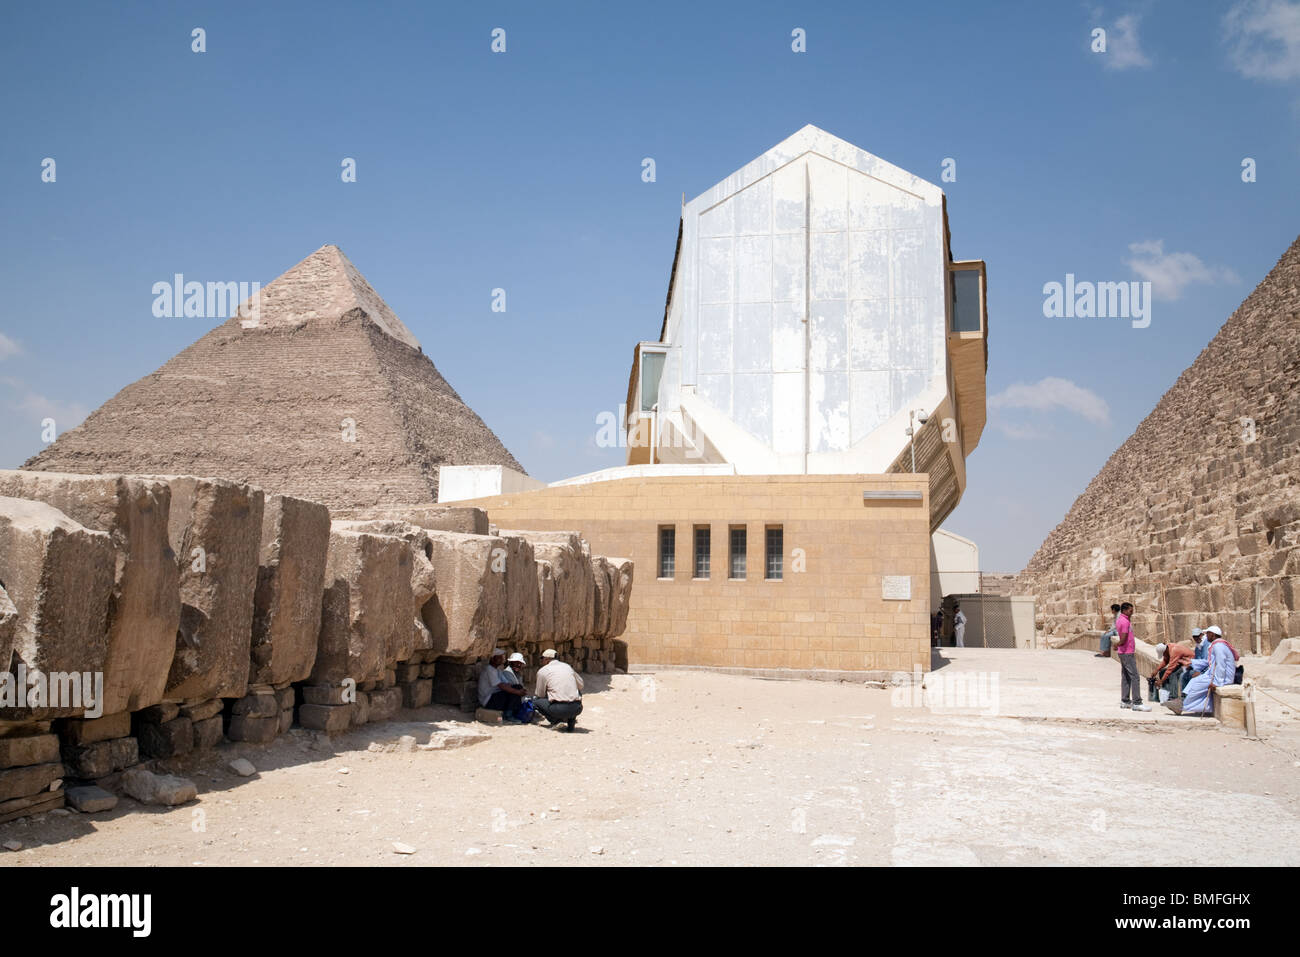 El moderno edificio que alberga el Barco Solar del rey Khufu (Keops) en la base de la Gran Pirámide de Giza, en El Cairo, Egipto Foto de stock